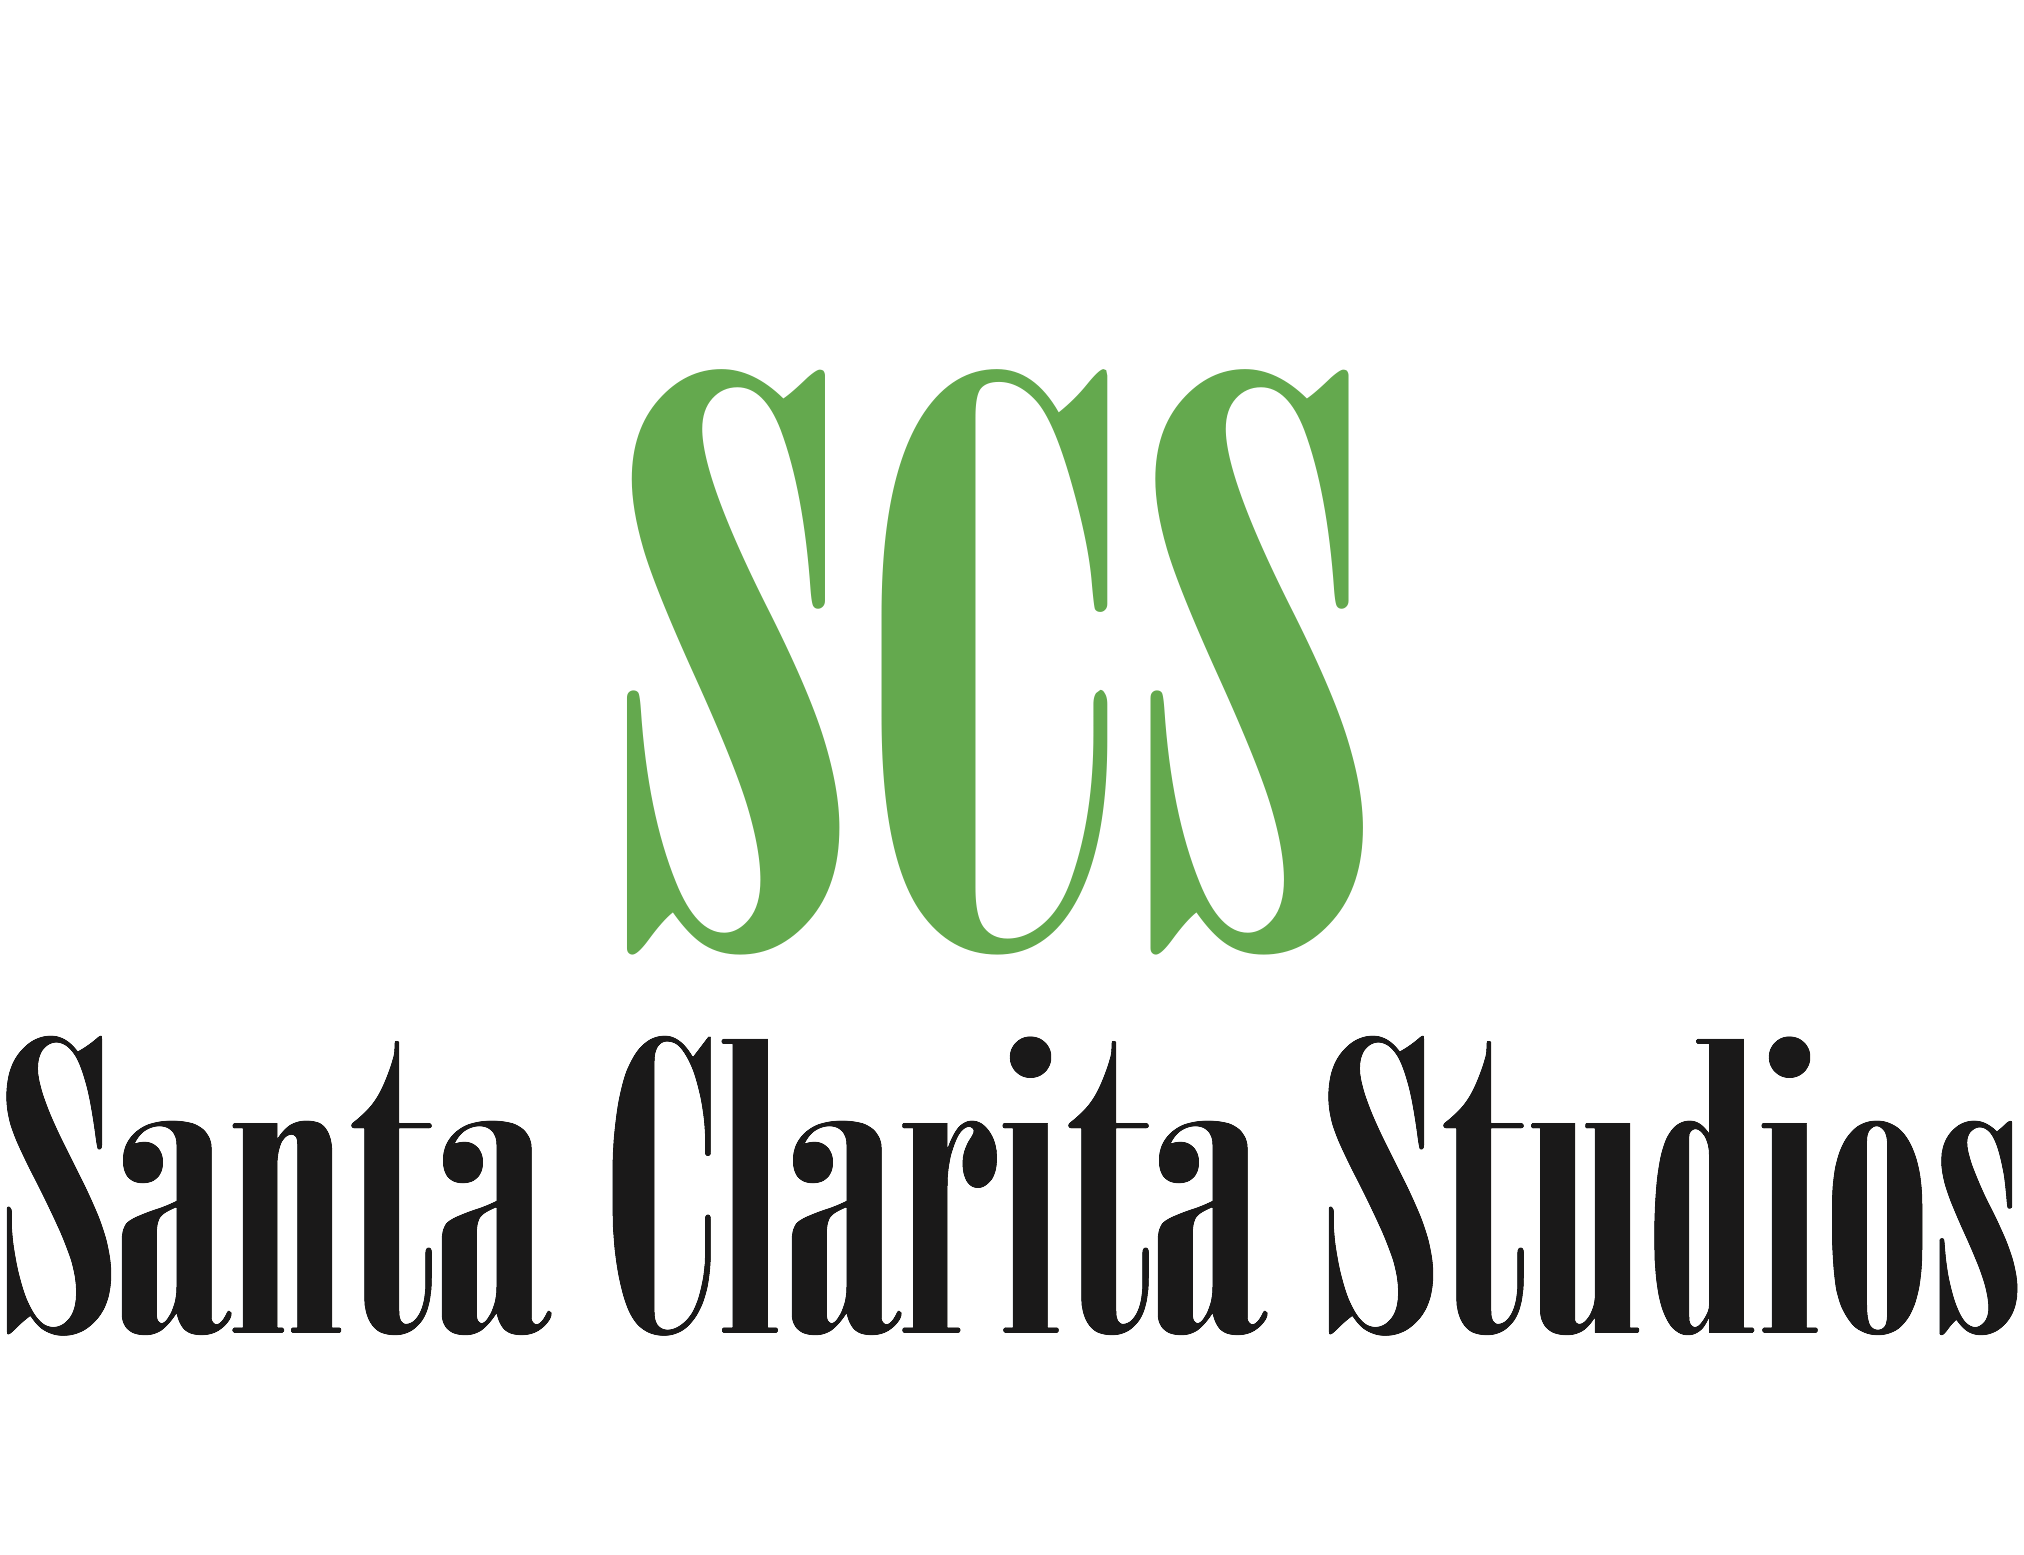 SCS logo 1.png